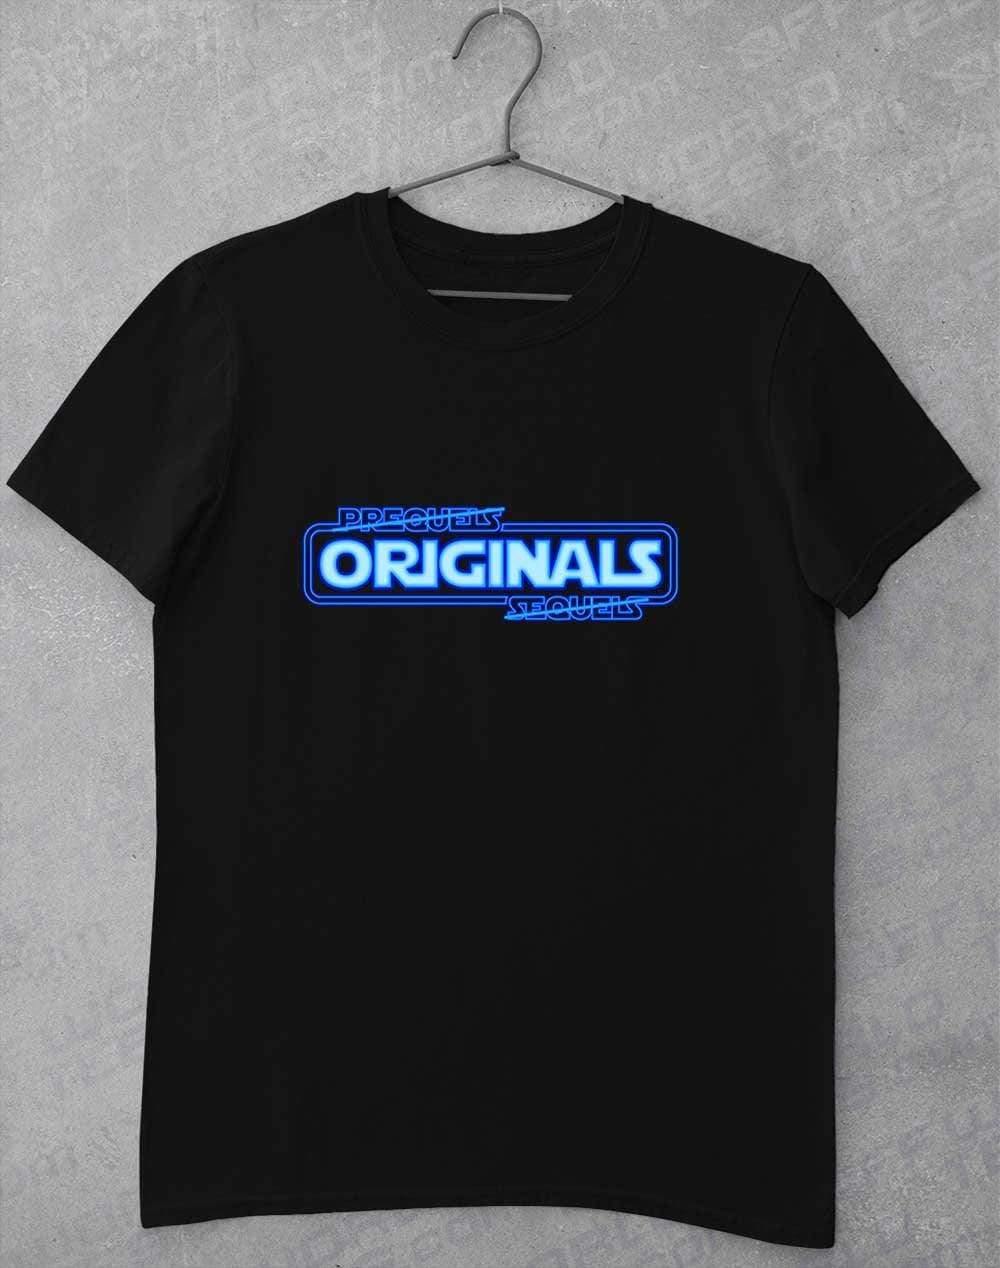 Originals FTW - T-Shirt S / Black  - Off World Tees